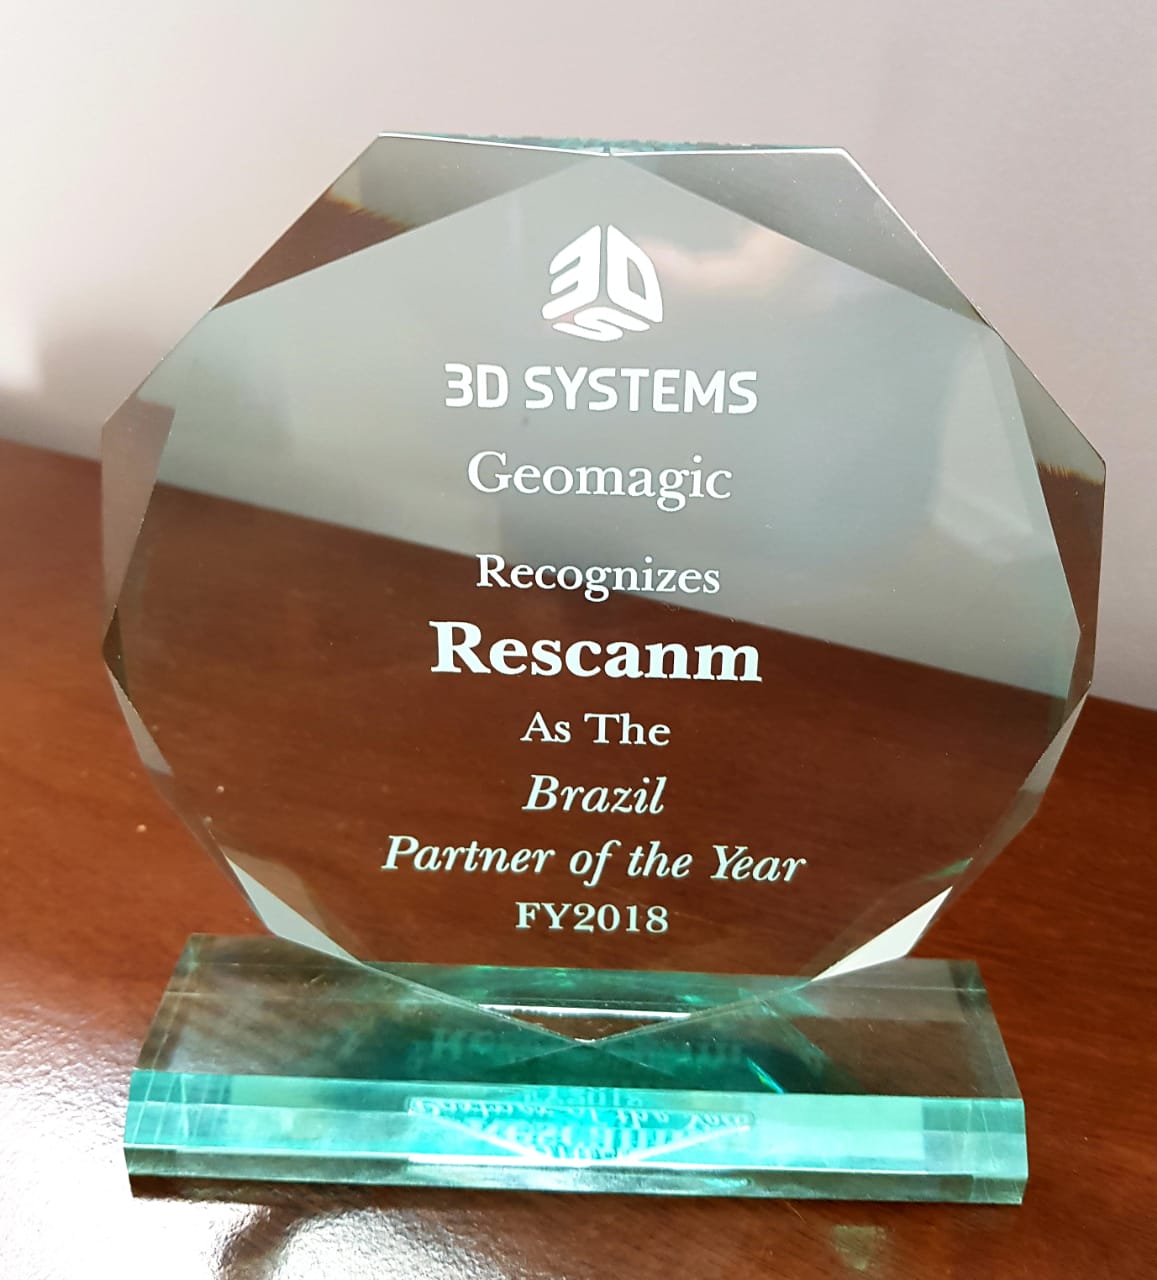 RESCANM Recebe Prêmio de Reconhecimento Internacional da 3D Systems 2